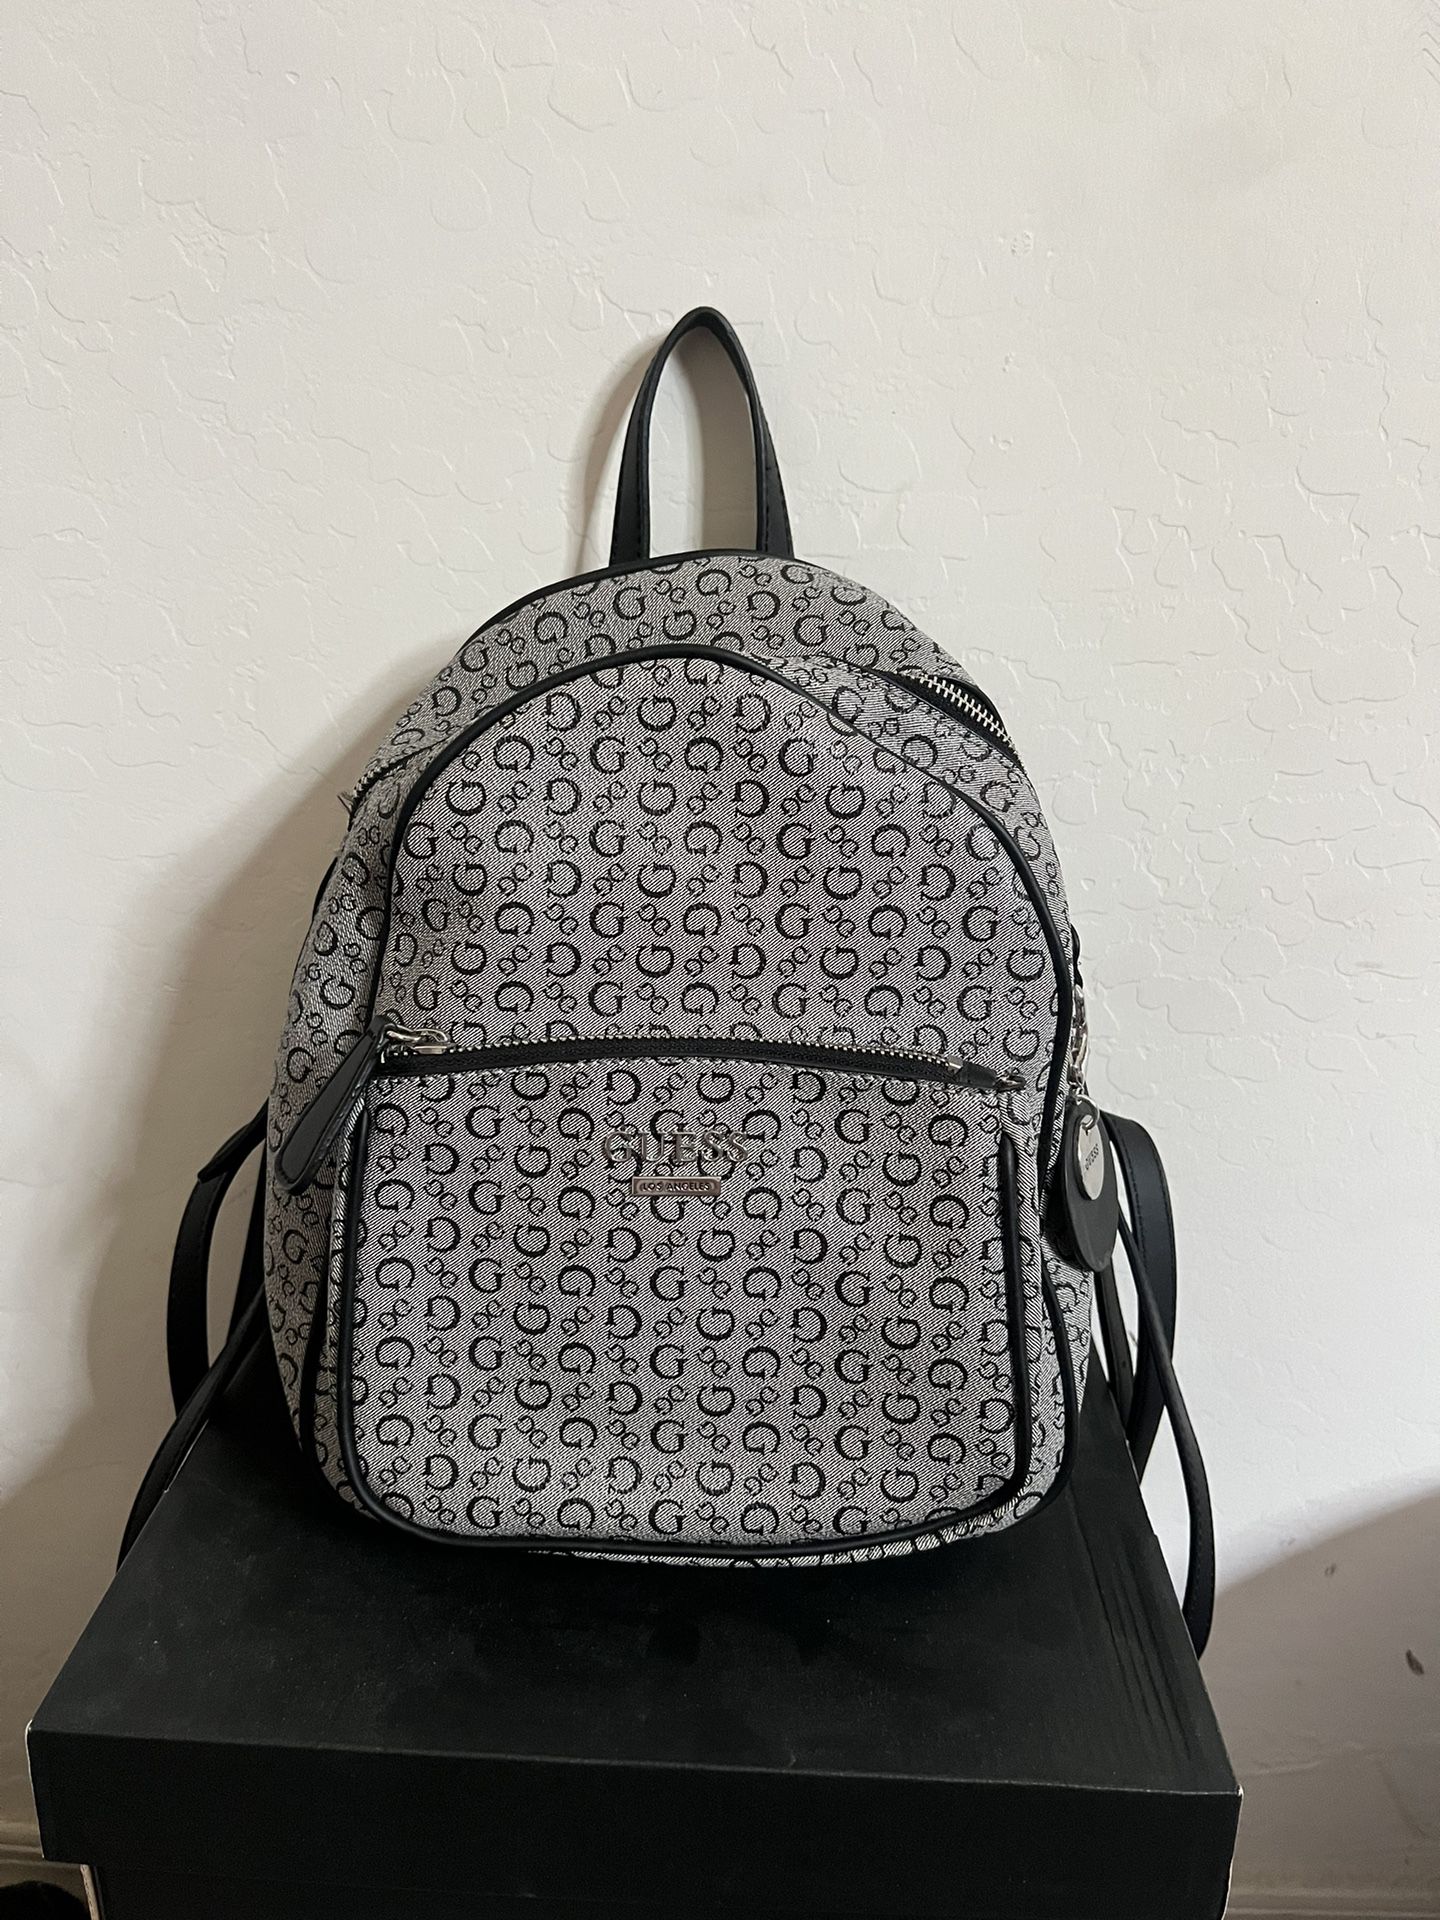 Guess Mini Backpack 